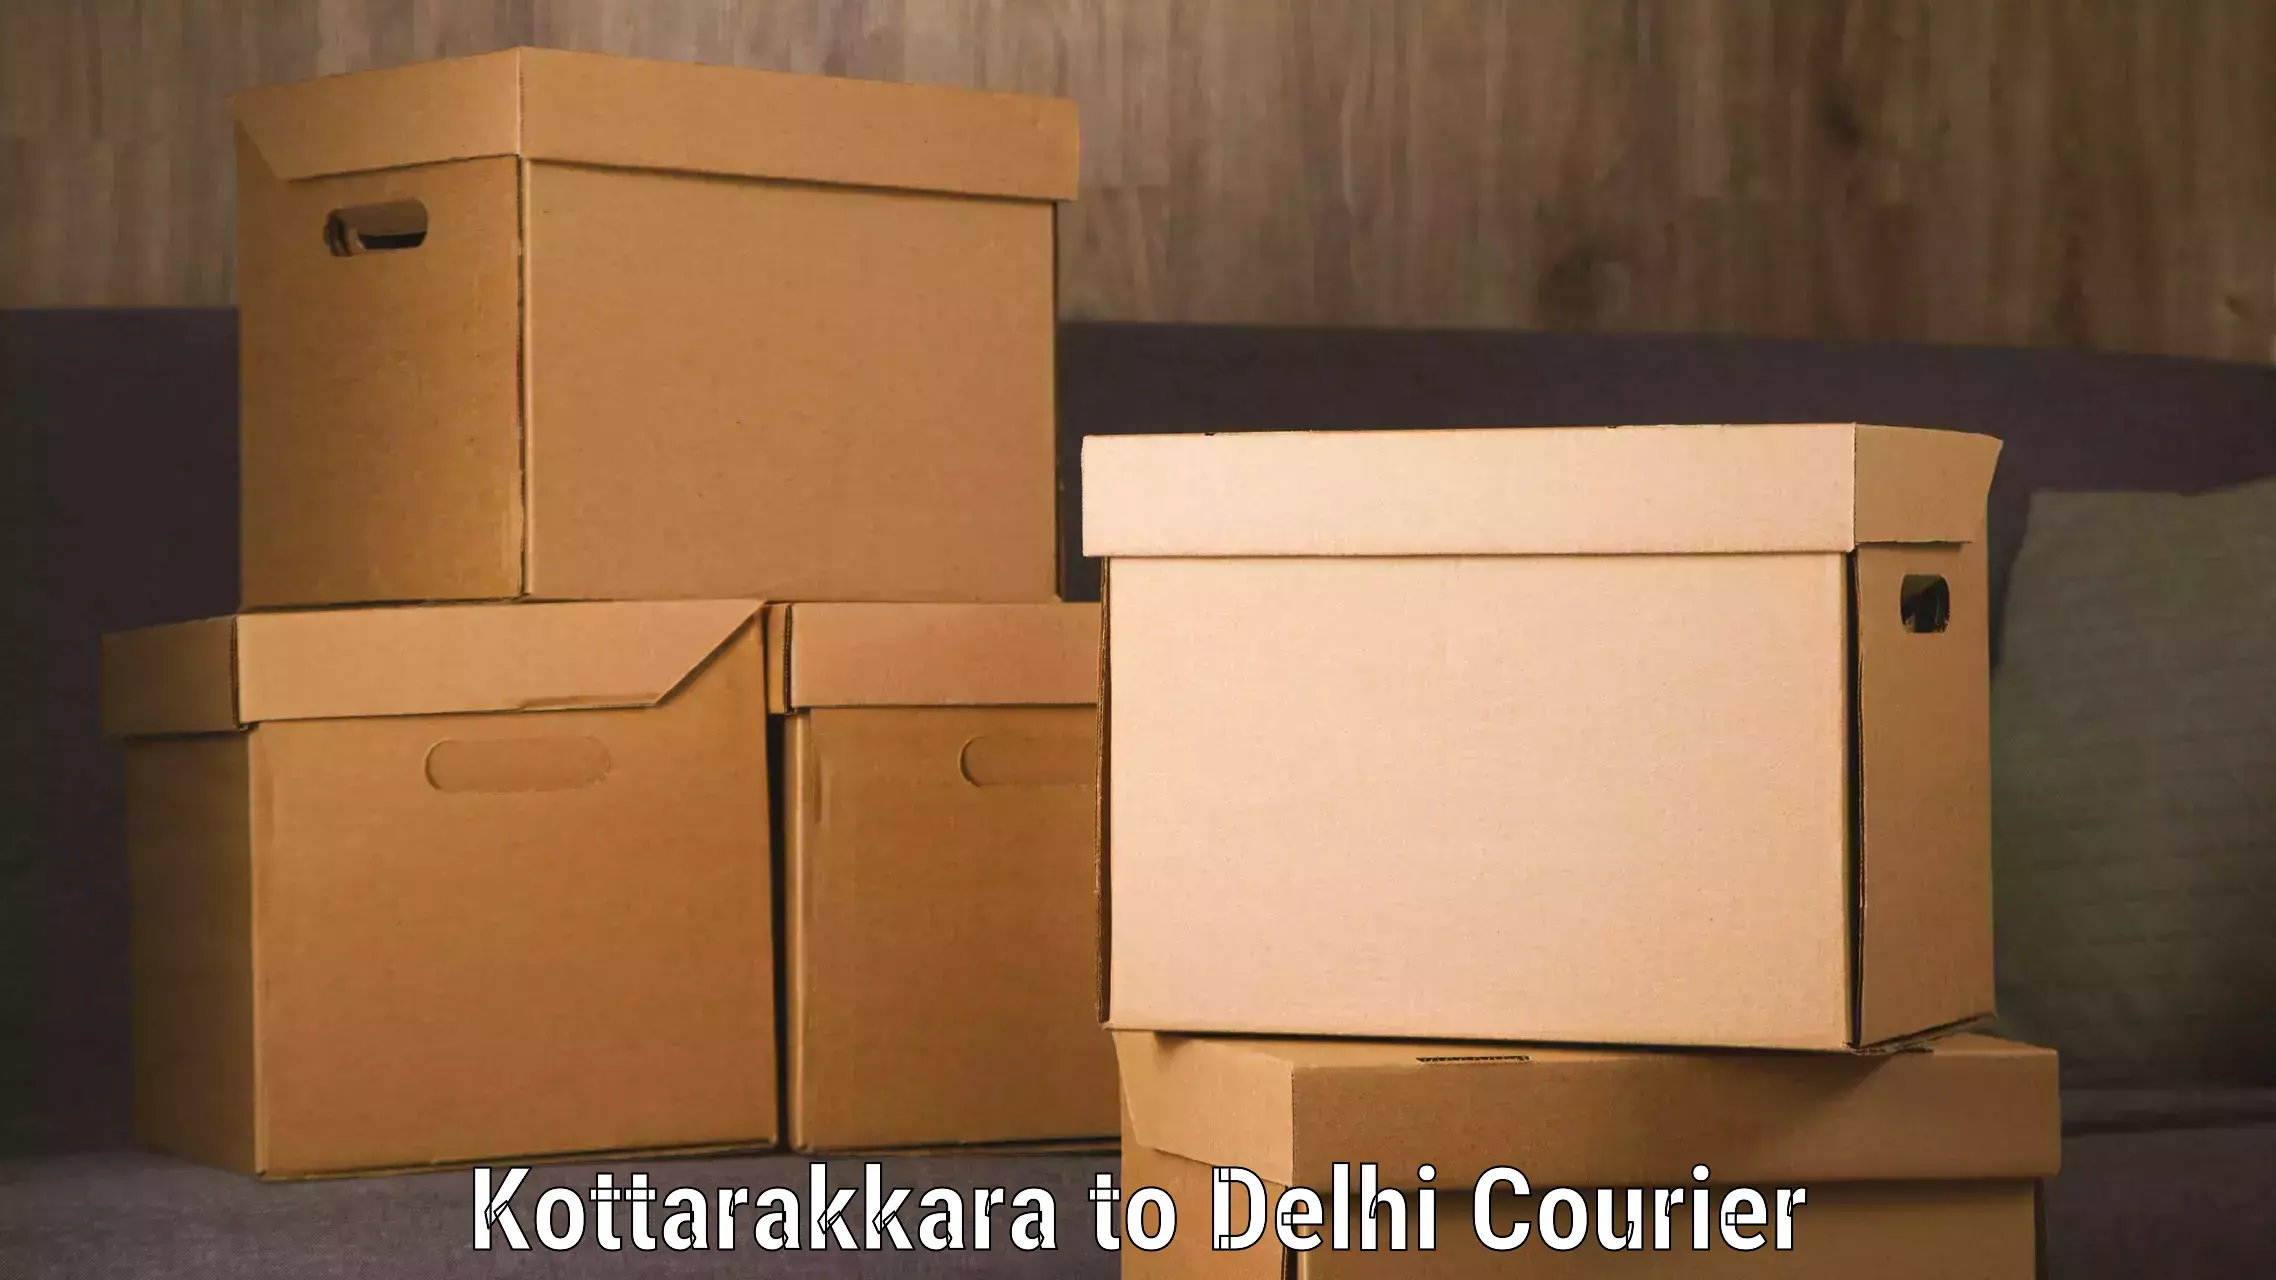 Express logistics service Kottarakkara to Burari